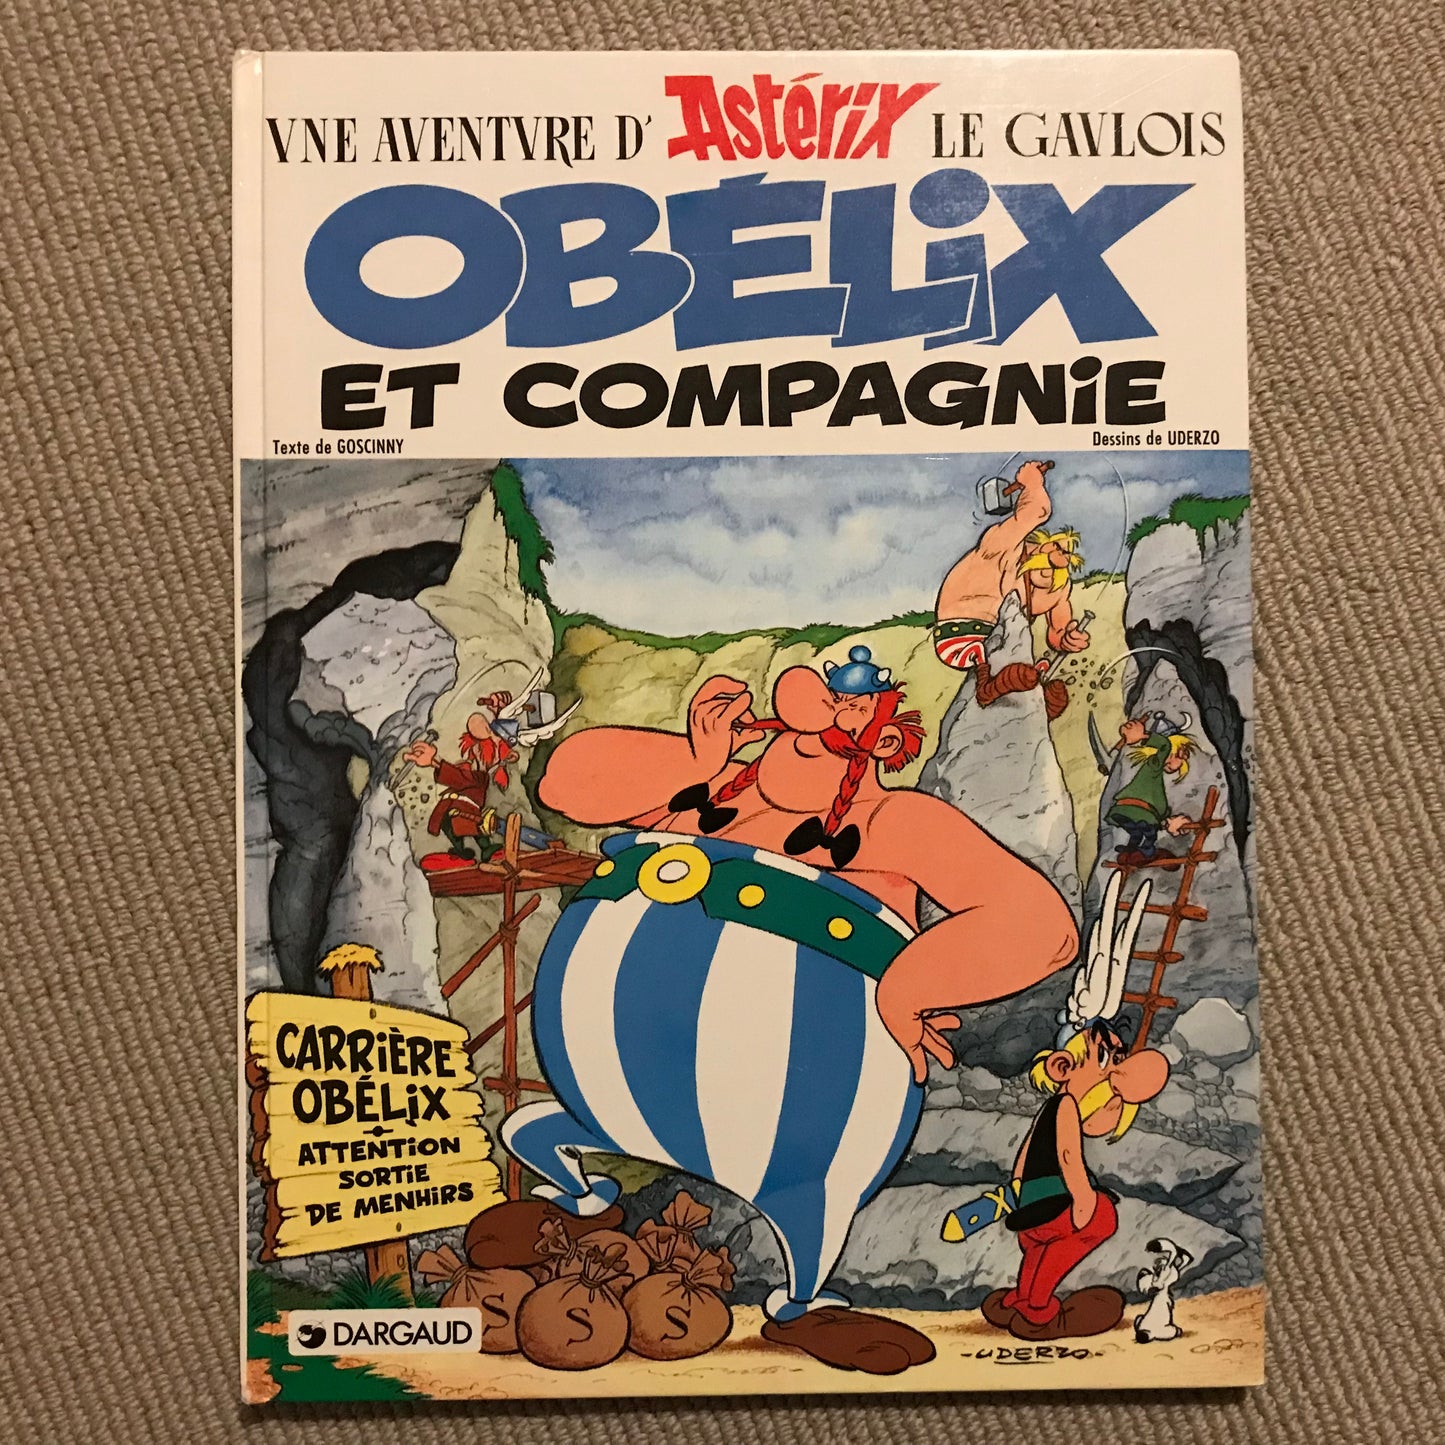 Astérix, Obélix et compagnie - Goscinny & Uderzo